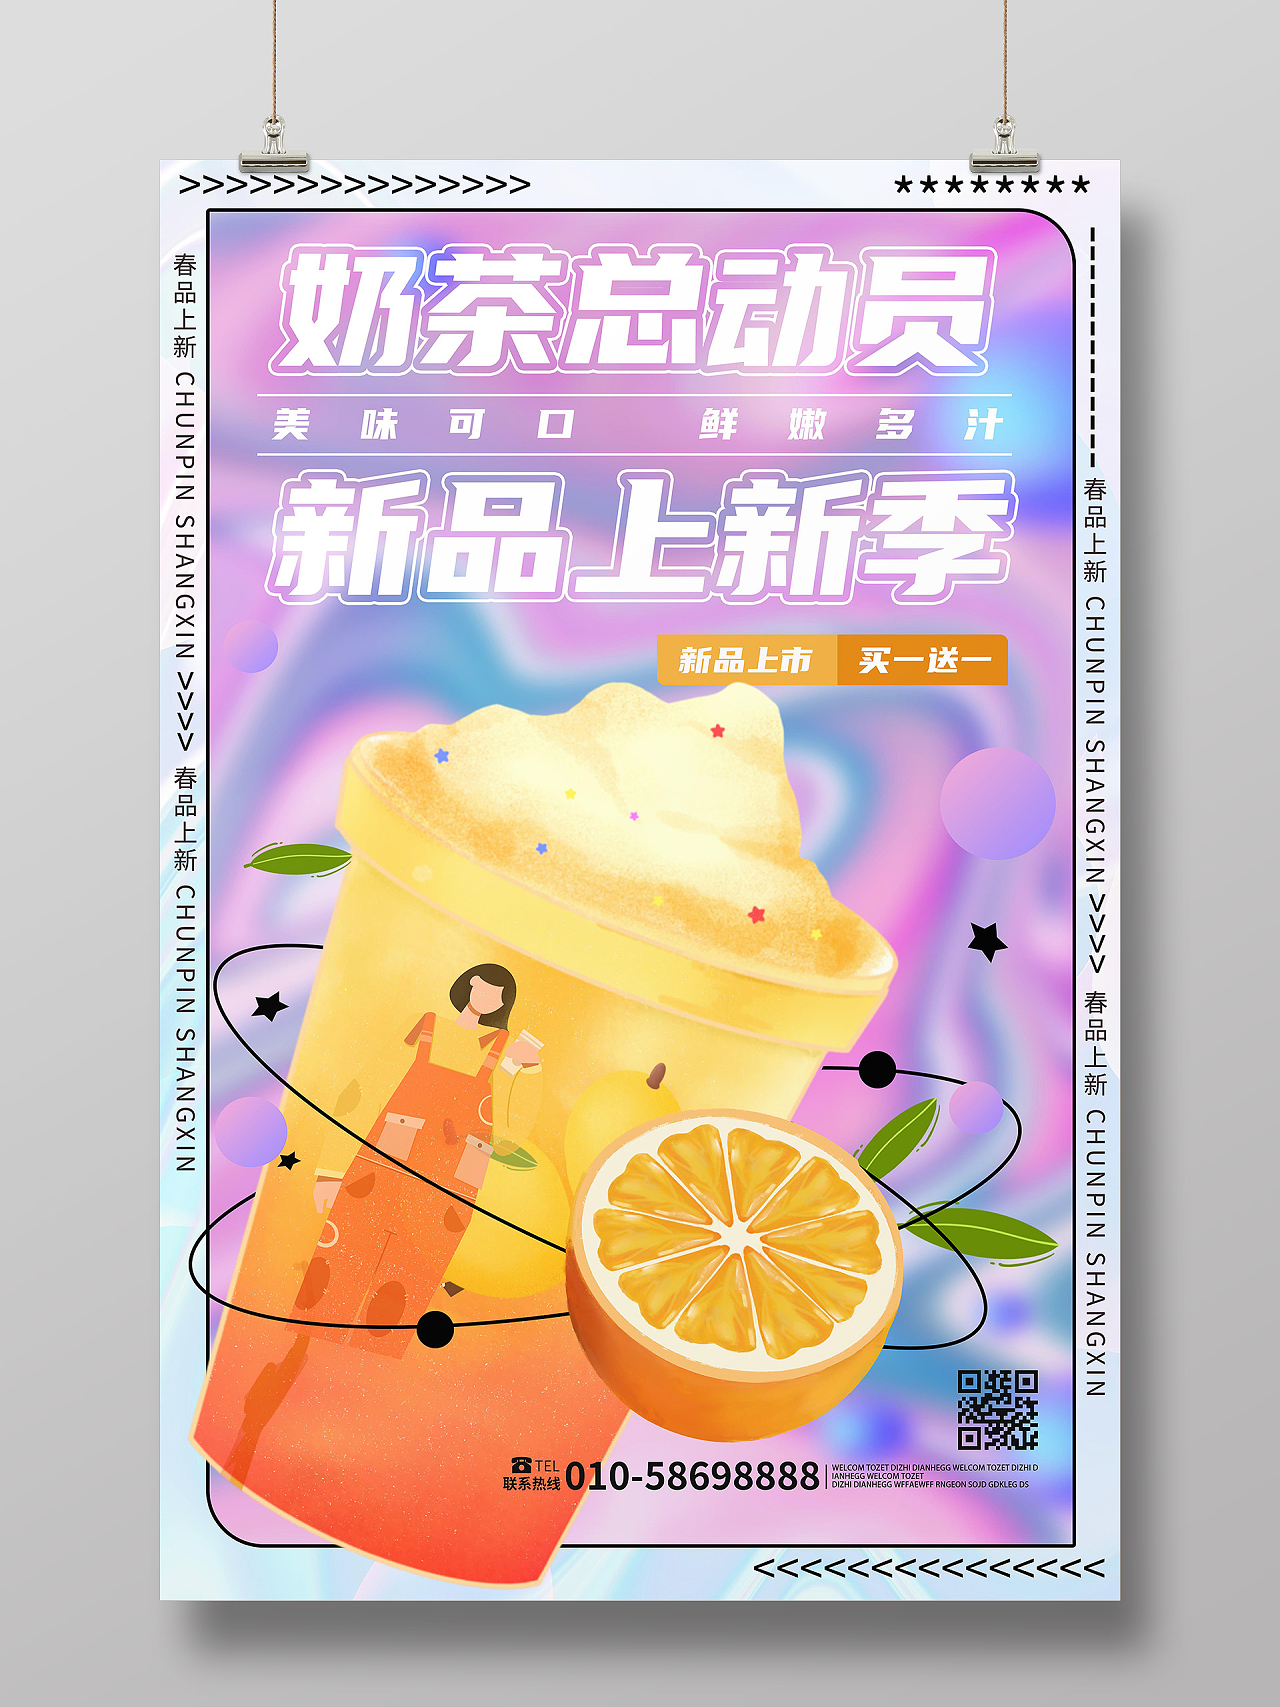 紫红色创意酸性风格奶茶总动员新品上新季海报设计奶茶海报